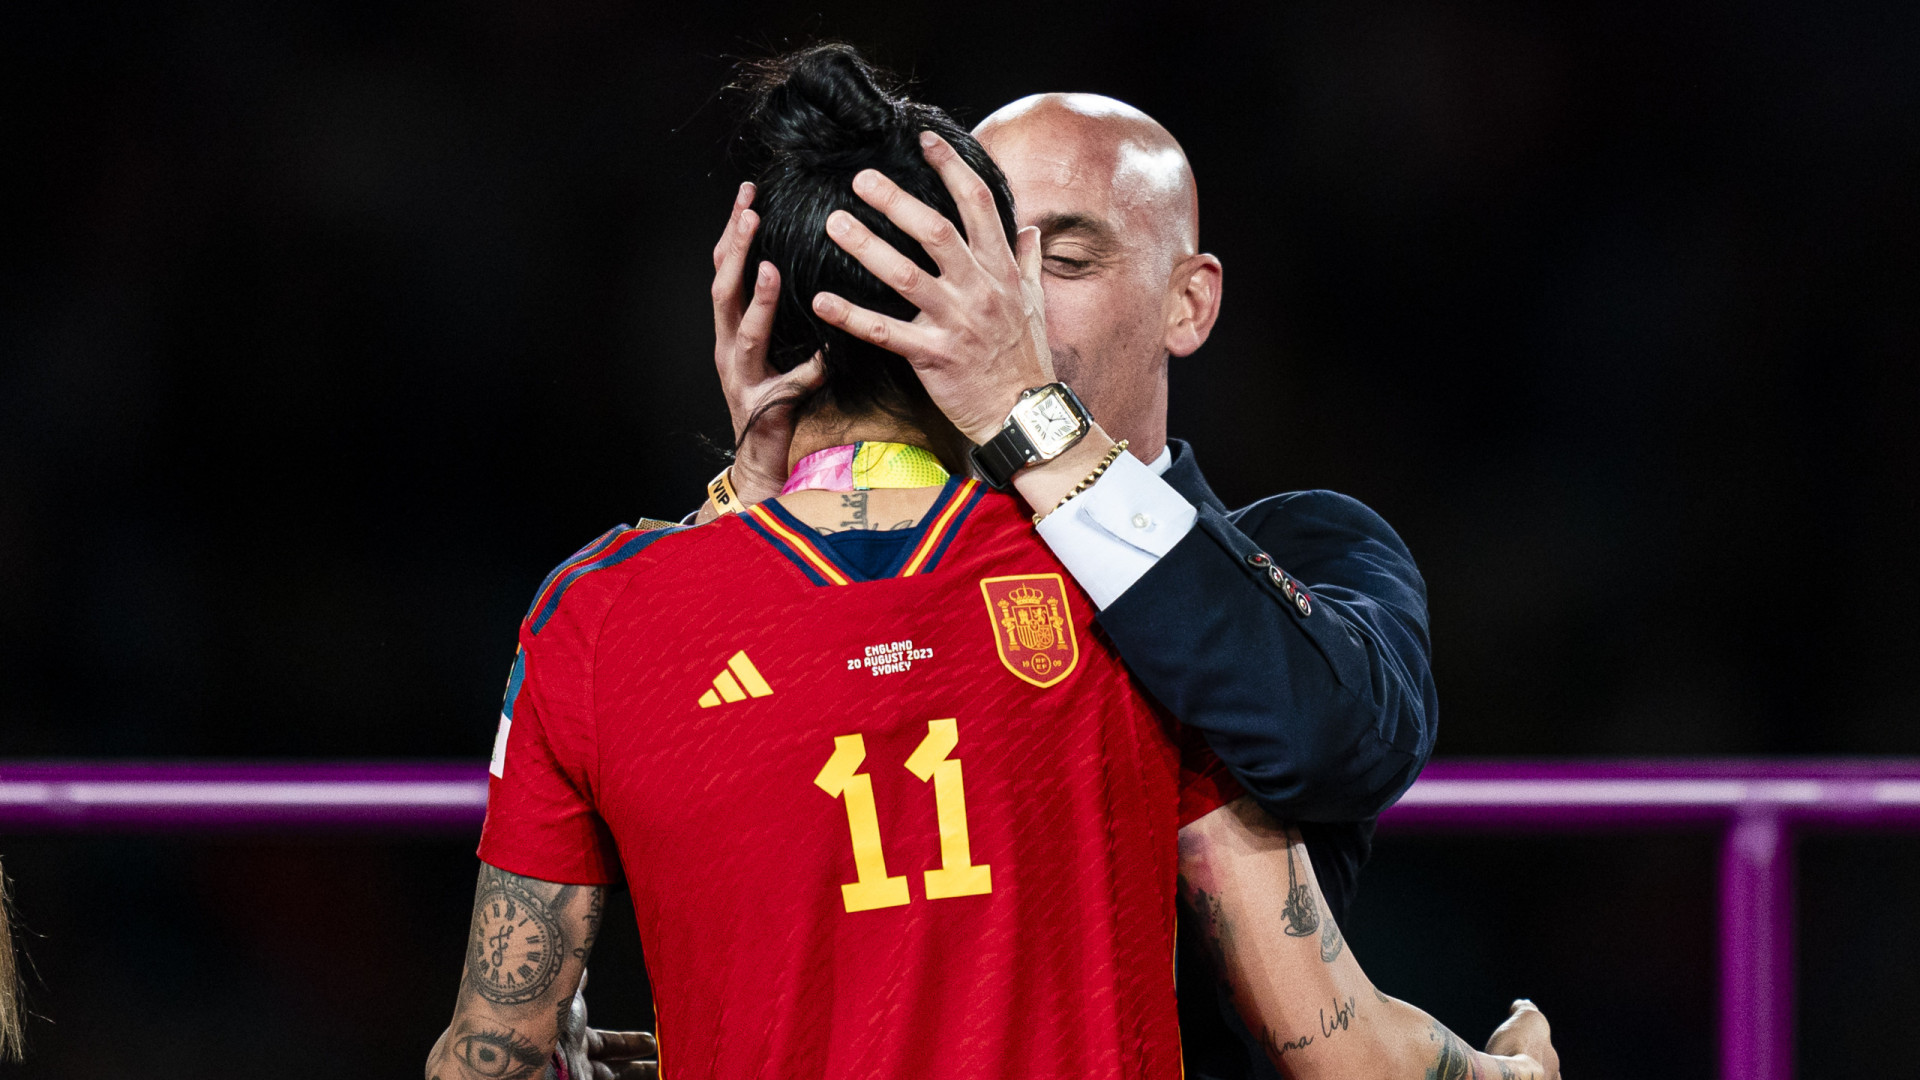 Se acabó: o grito de libertação das jogadoras da Espanha após o caso Luis Rubiales e anos de abuso